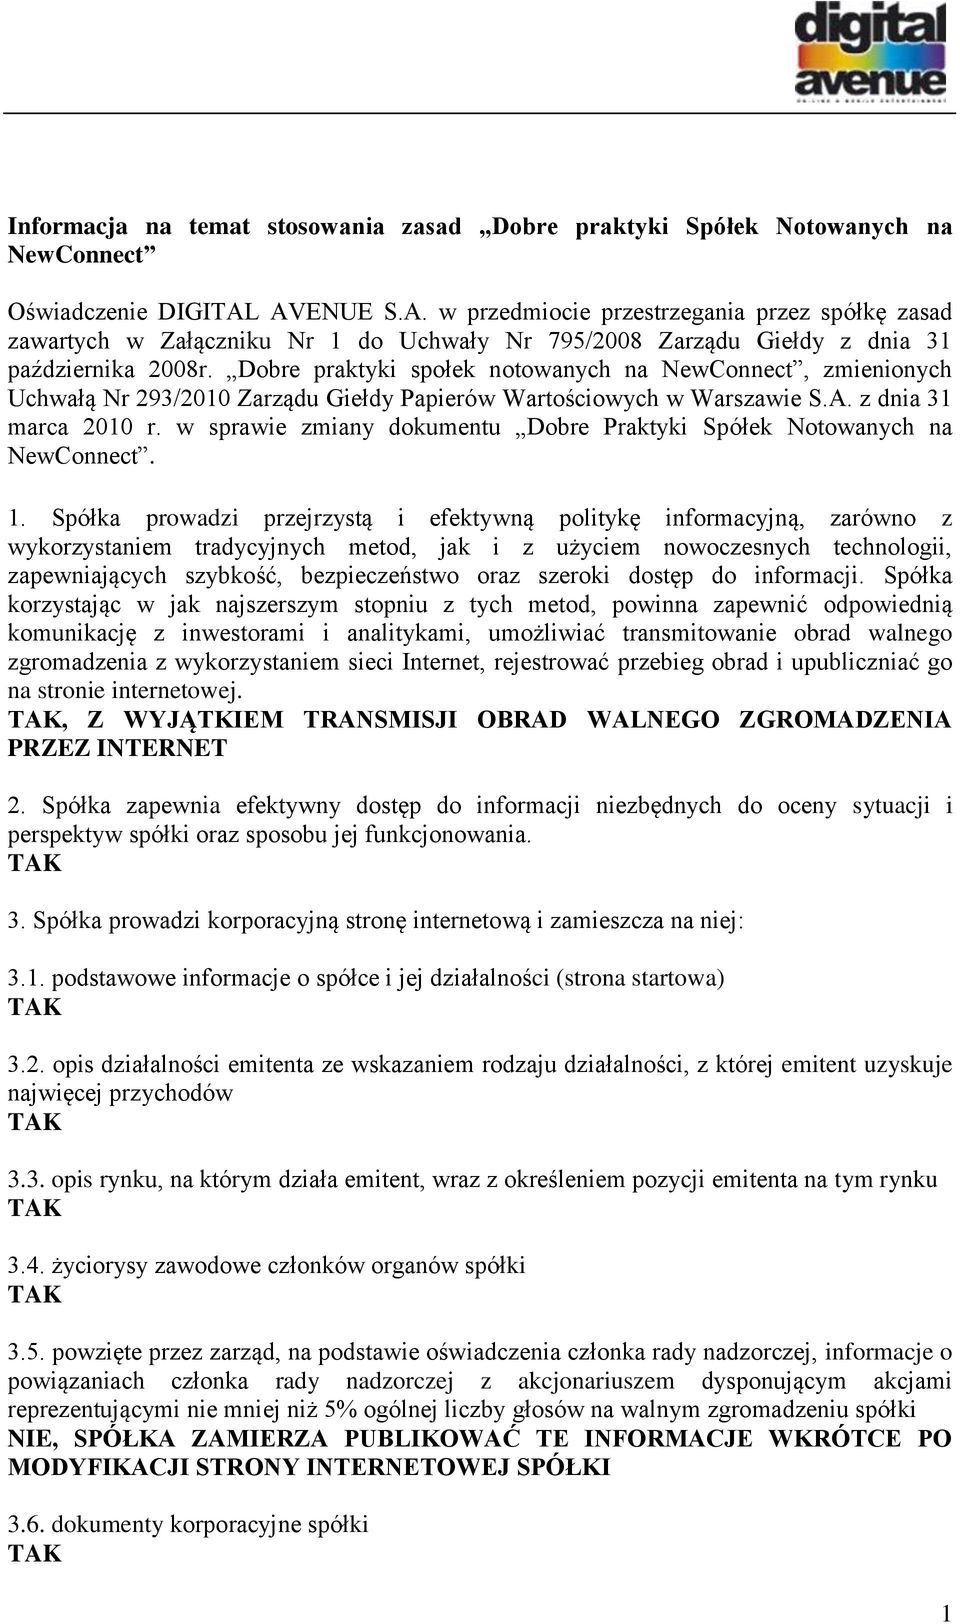 Dobre praktyki społek notowanych na NewConnect, zmienionych Uchwałą Nr 293/2010 Zarządu Giełdy Papierów Wartościowych w Warszawie S.A. z dnia 31 marca 2010 r.